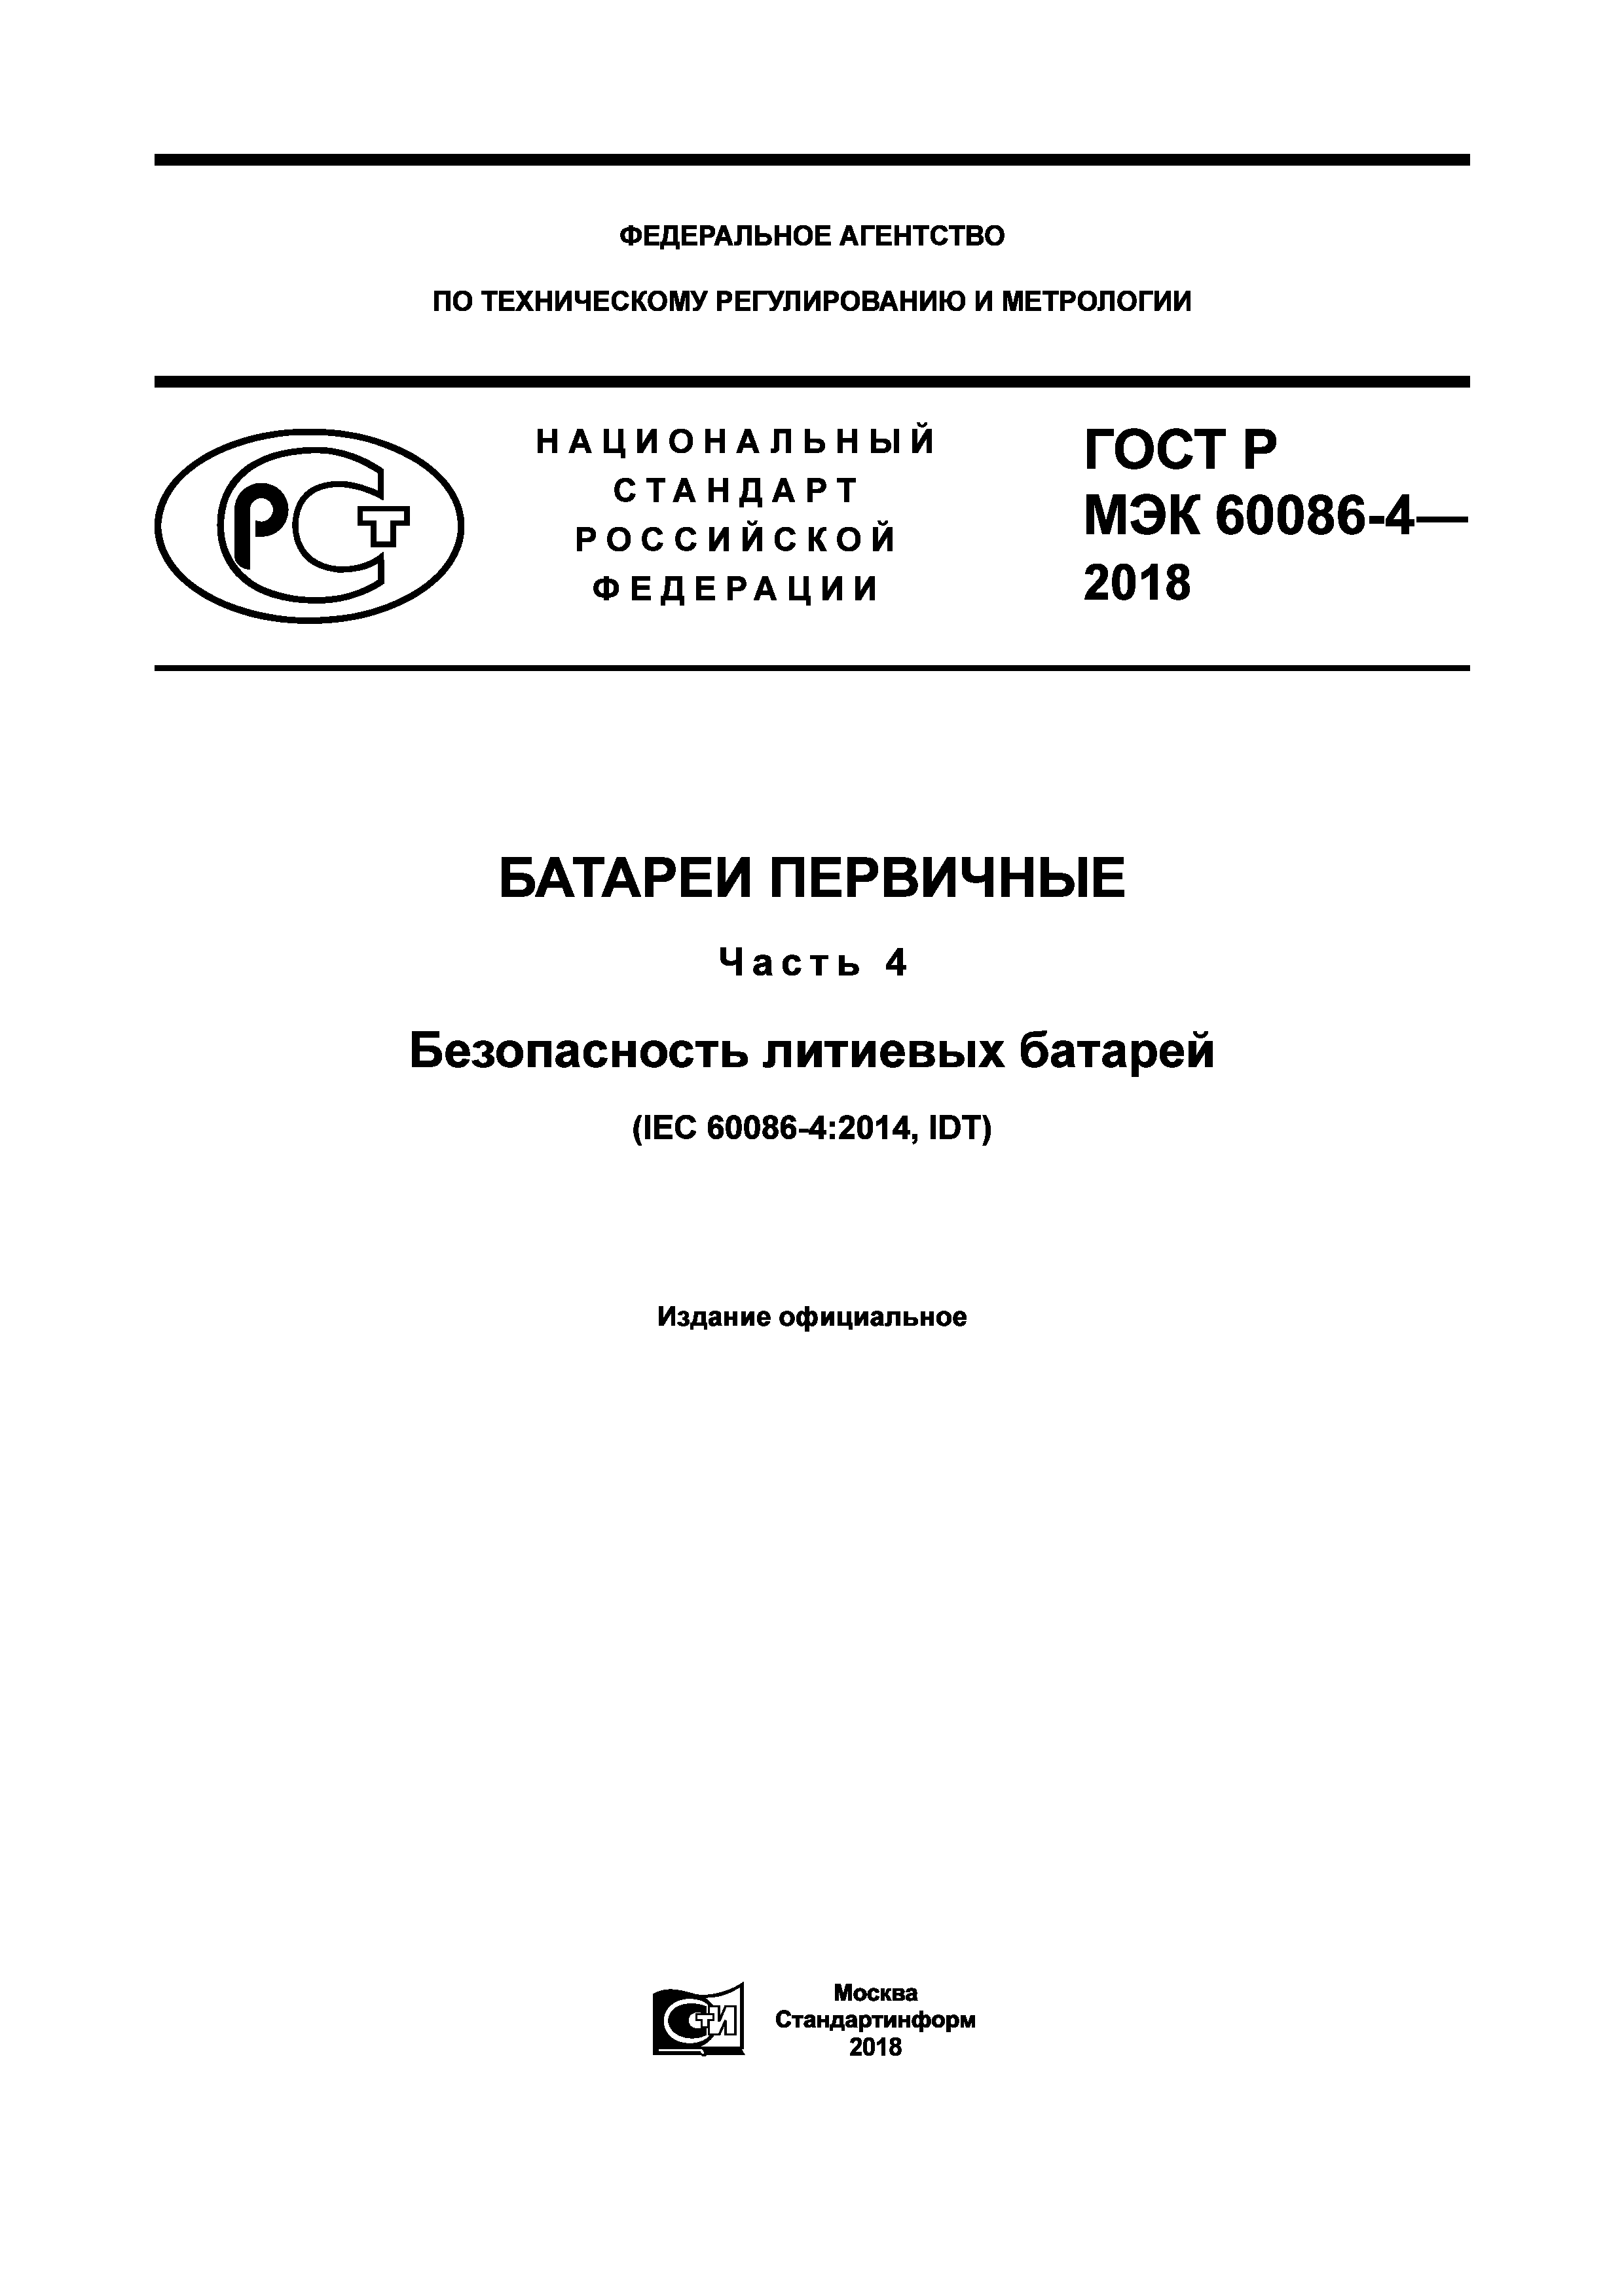 ГОСТ Р МЭК 60086-4-2018